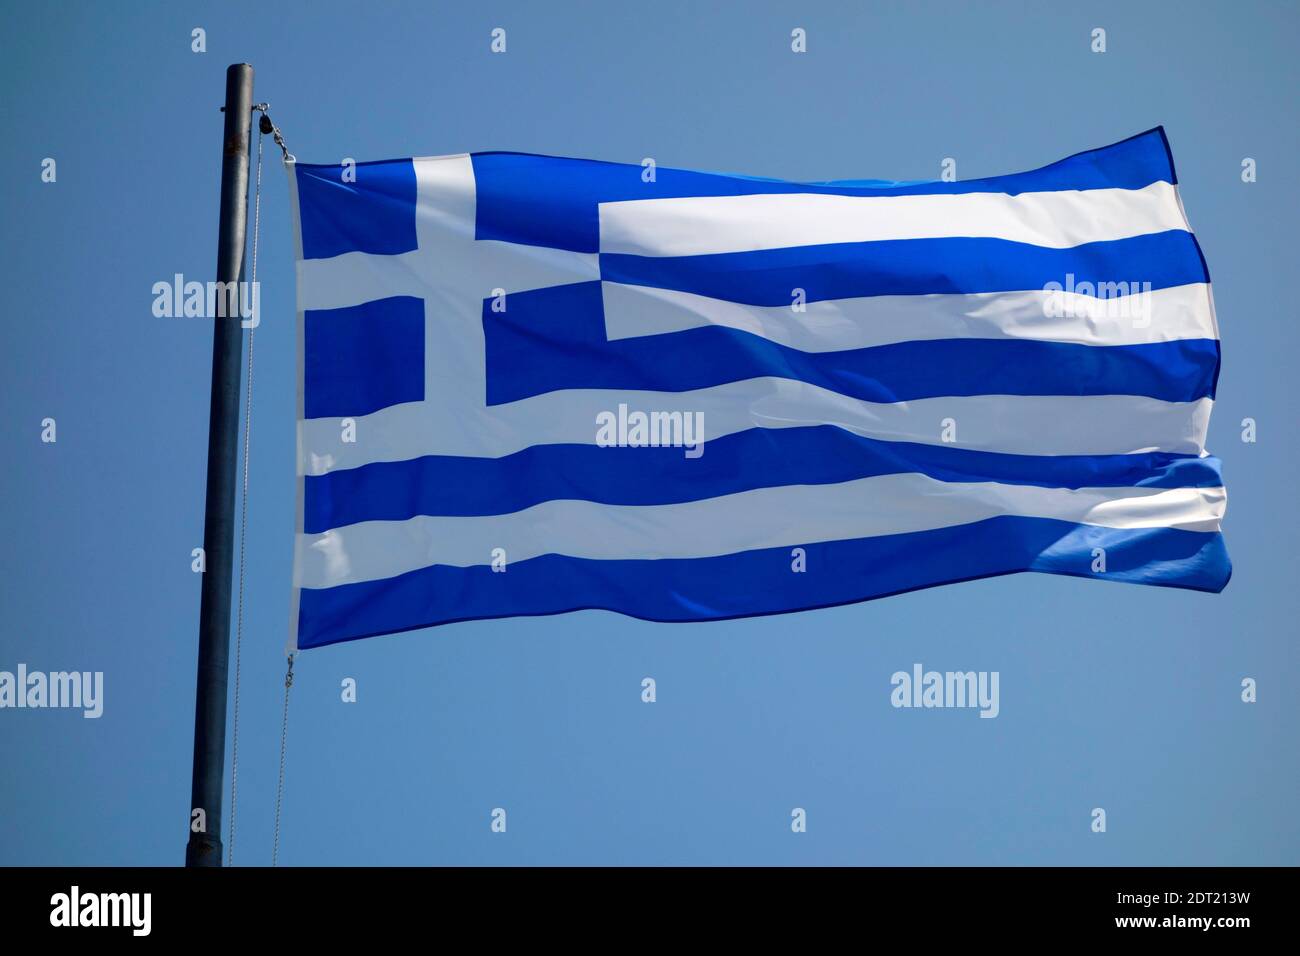 Le drapeau national de la Grèce Banque D'Images